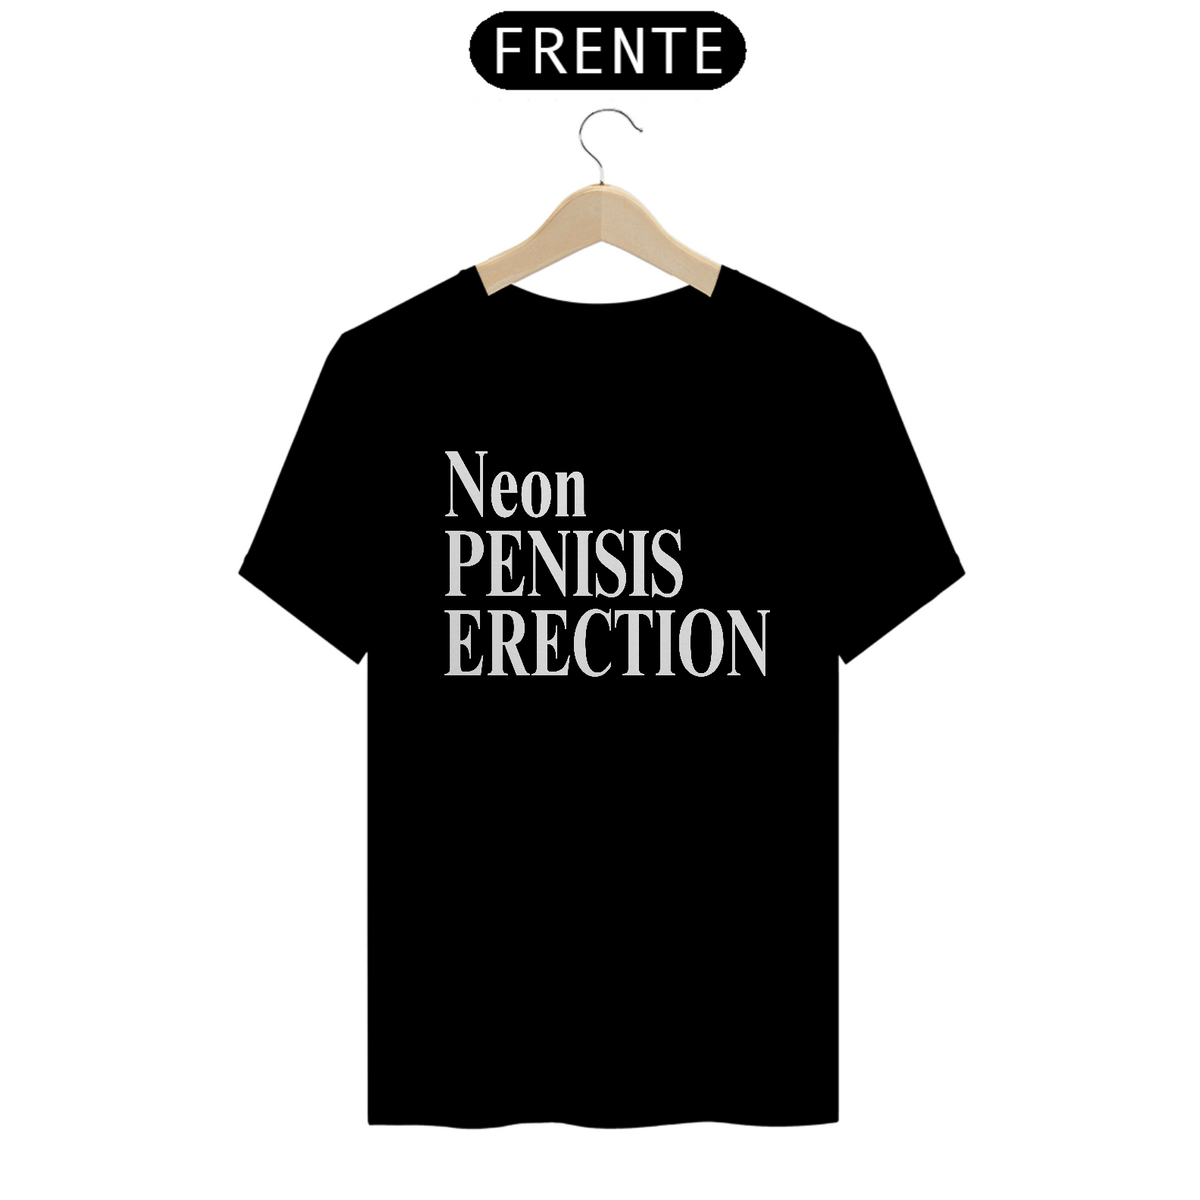 Nome do produto: Neon Penesis Erection